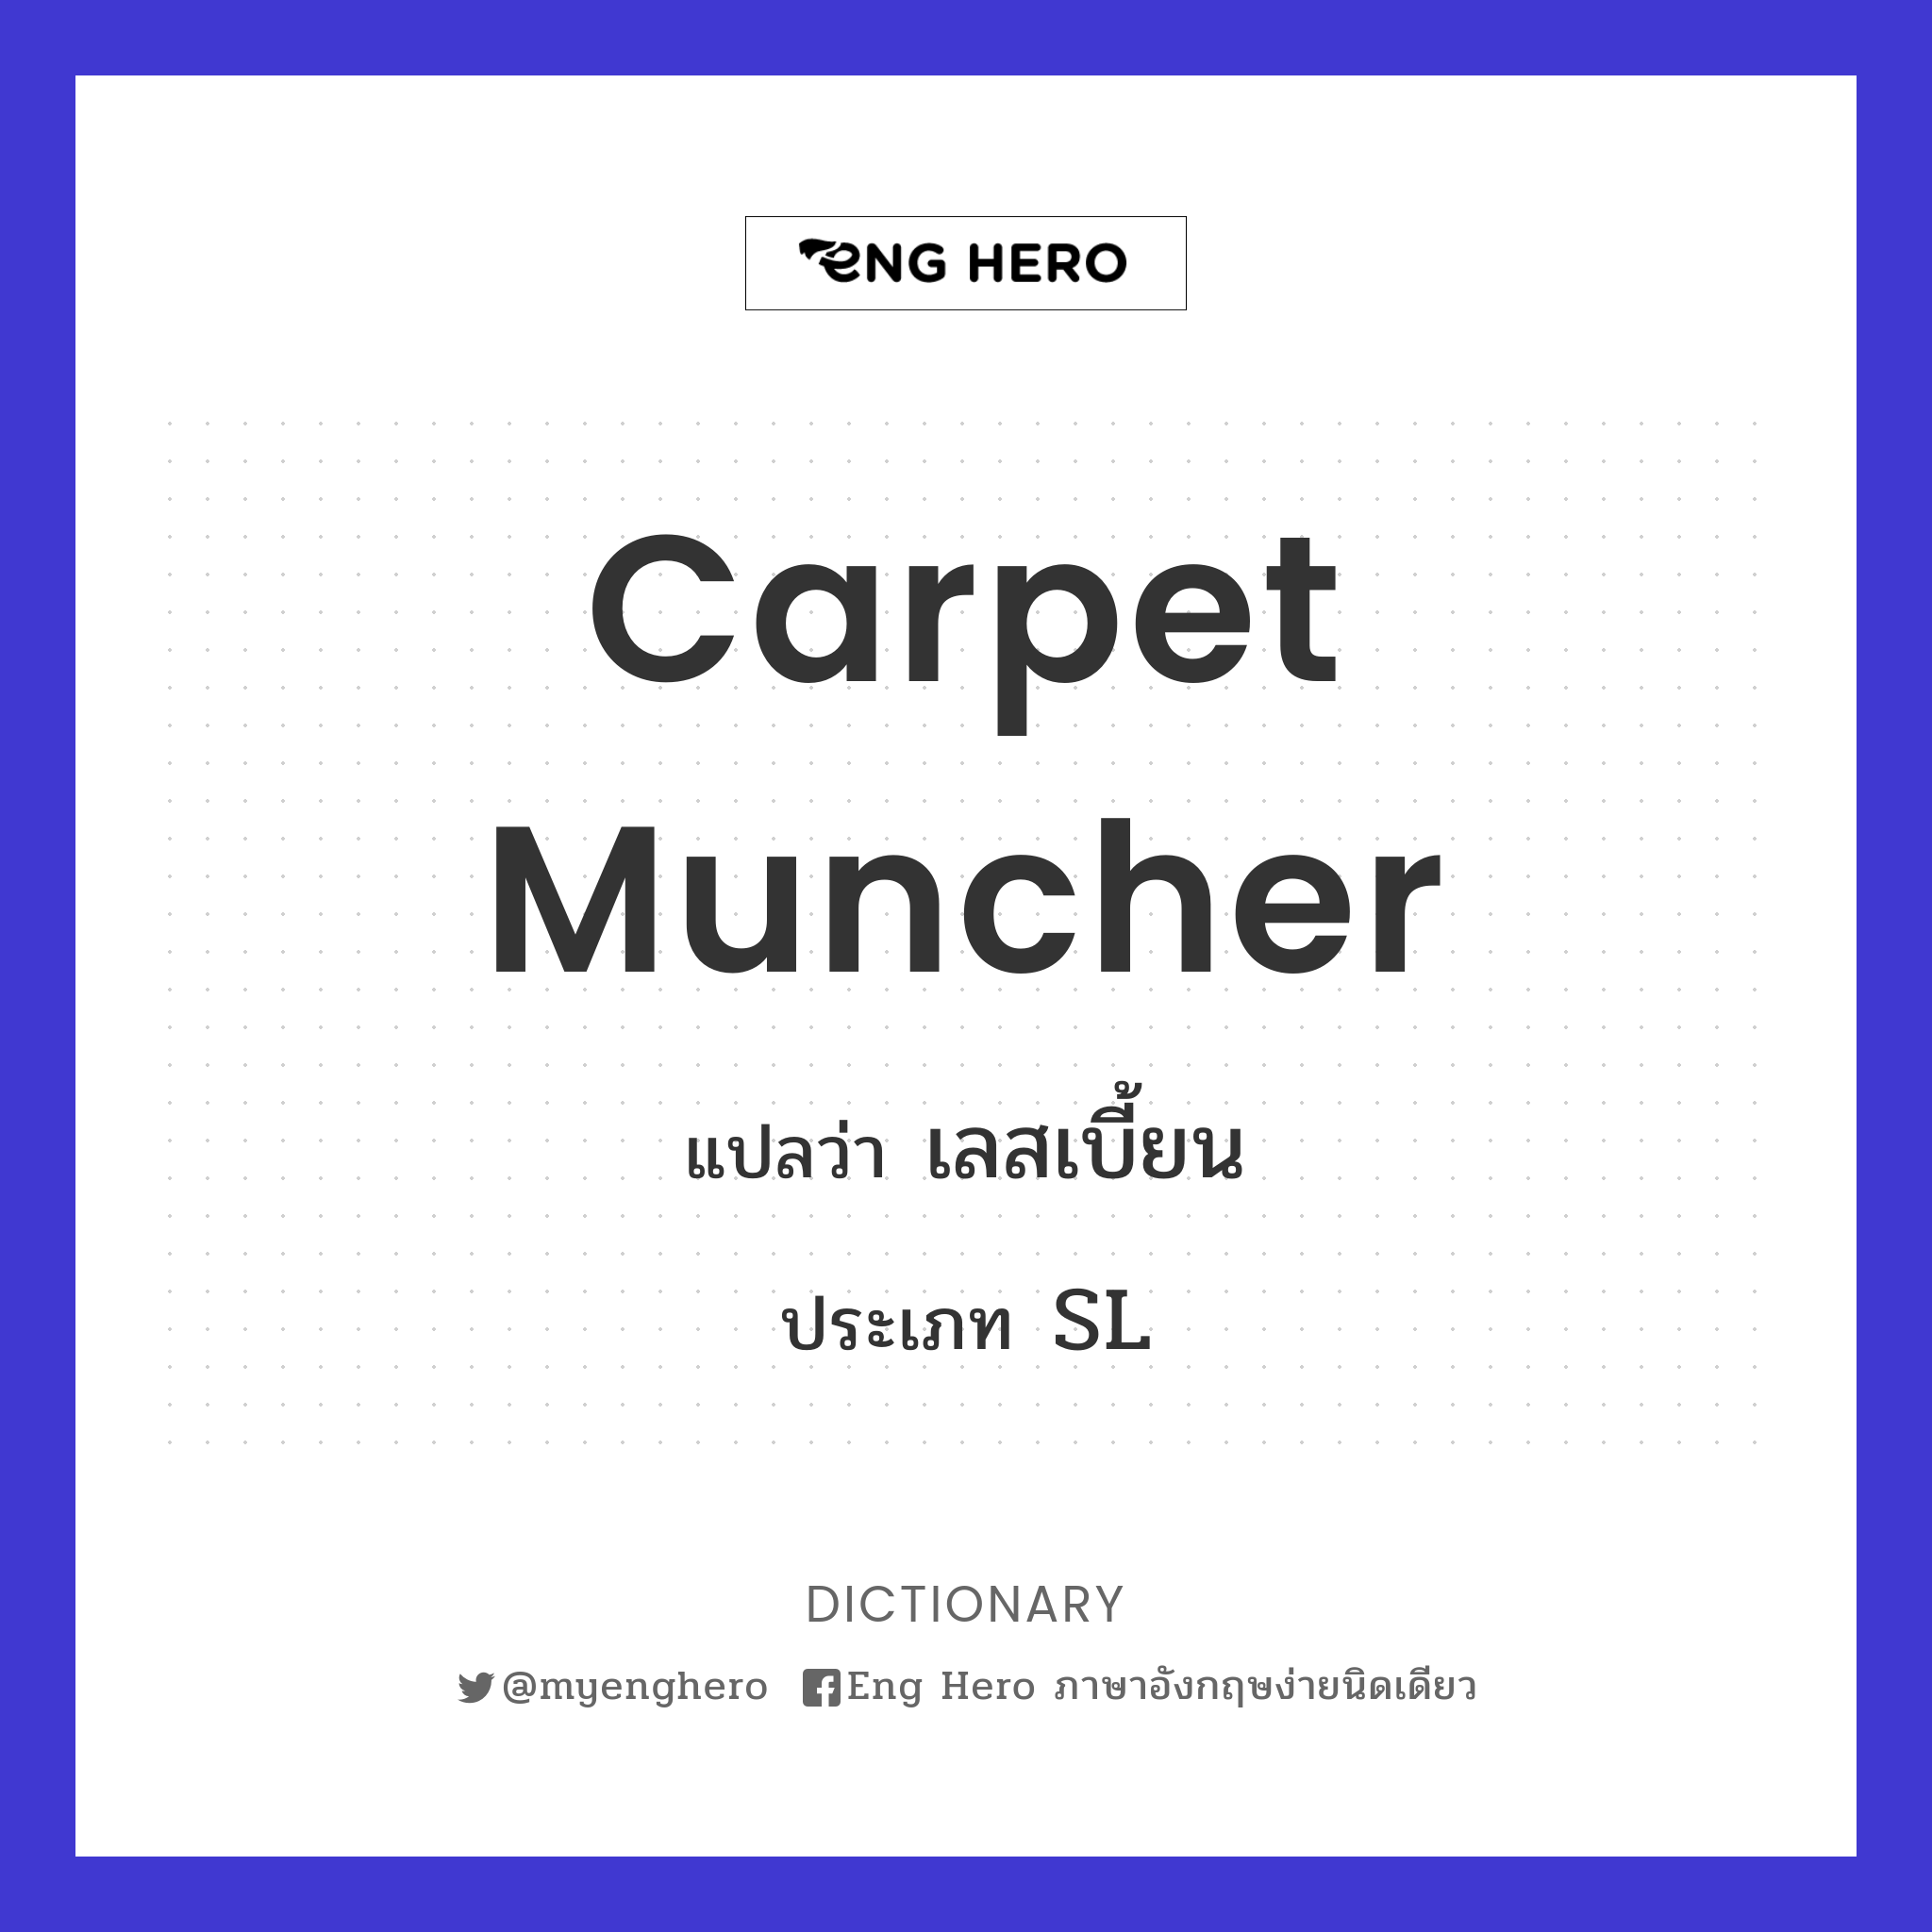 carpet muncher